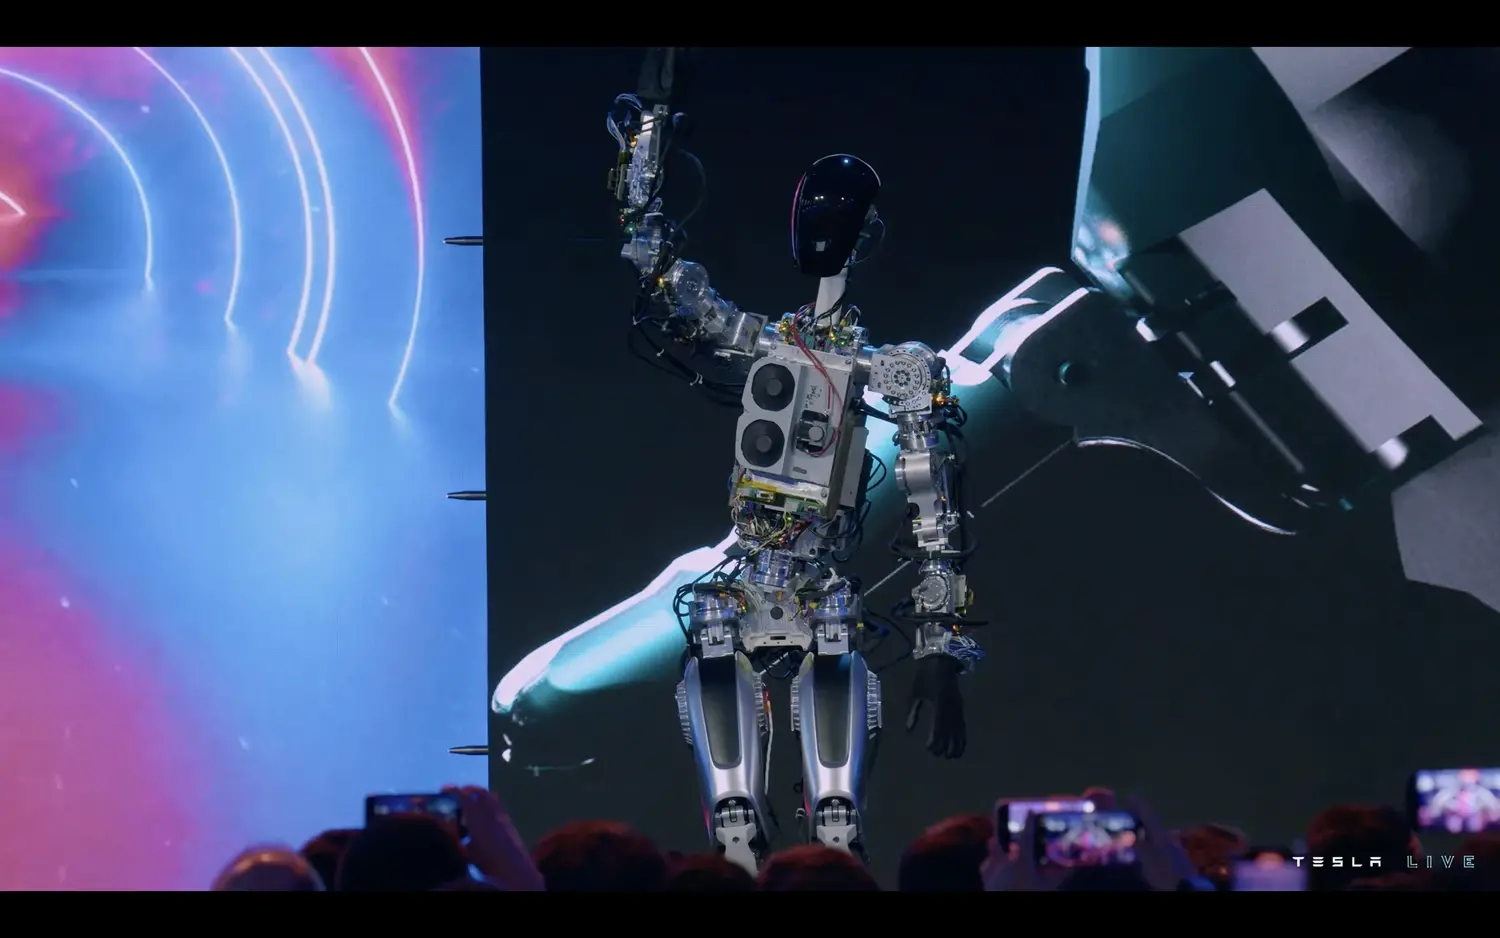 テスラが初の人型ロボット「オプティマス」の実機プロトタイプを公開